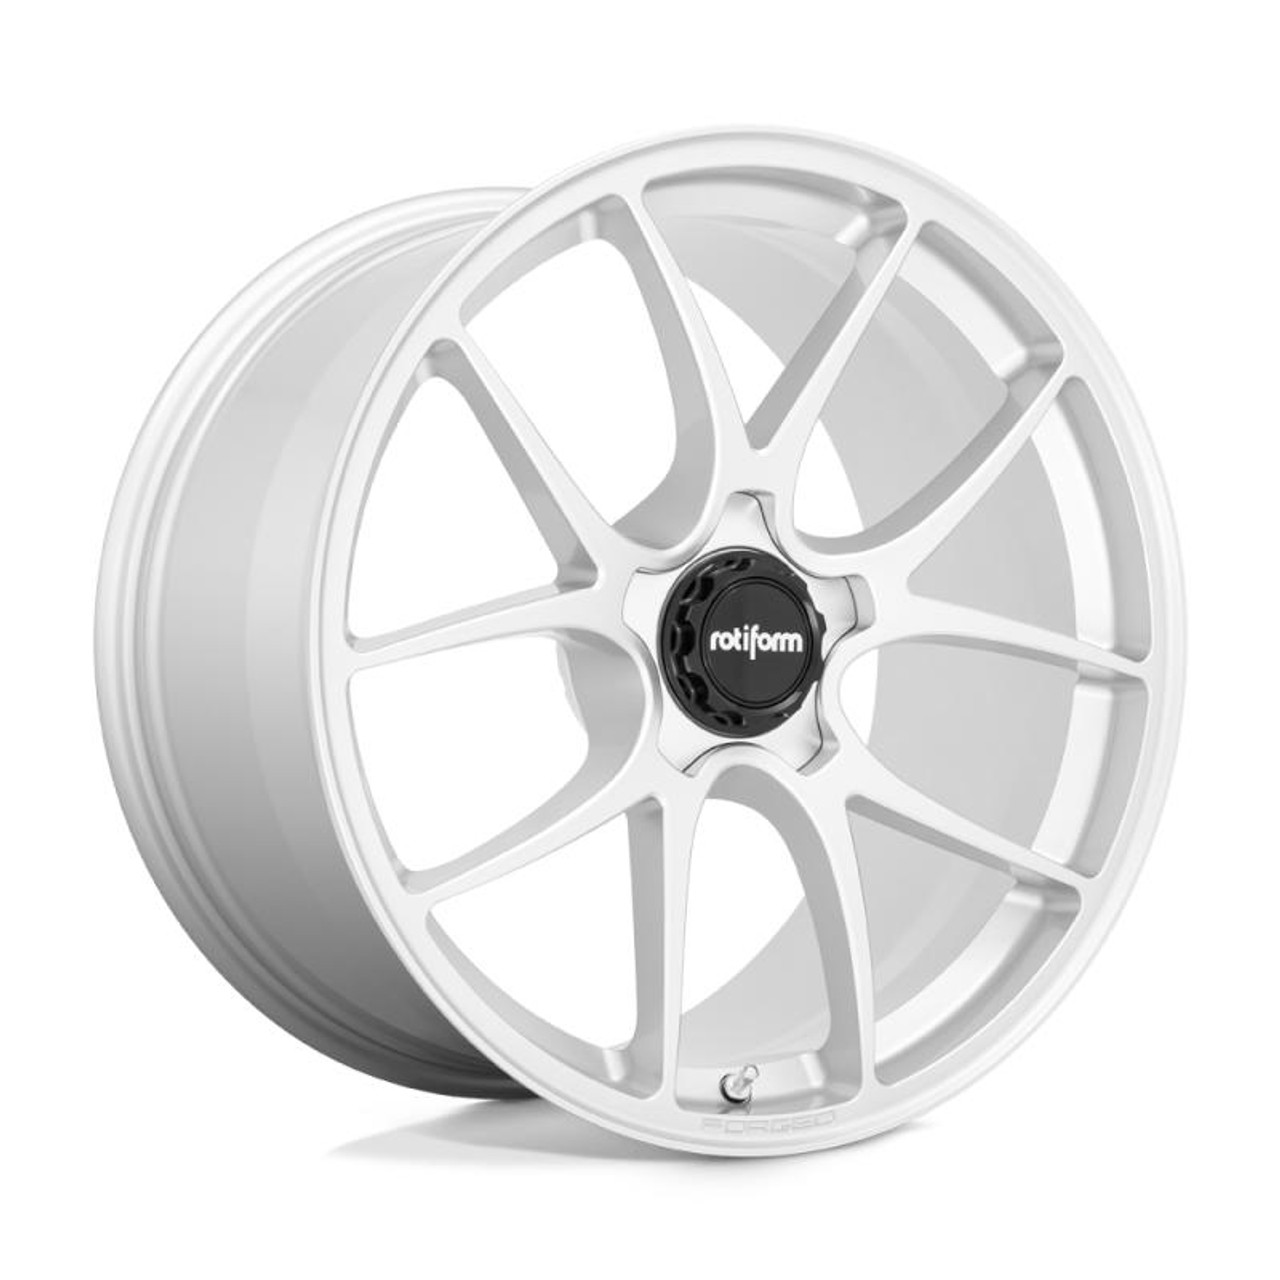  Rotiform R900 LTN Wheel 20x9 5x112 25 Offset - Gloss Silver - R9002090F8+25T 